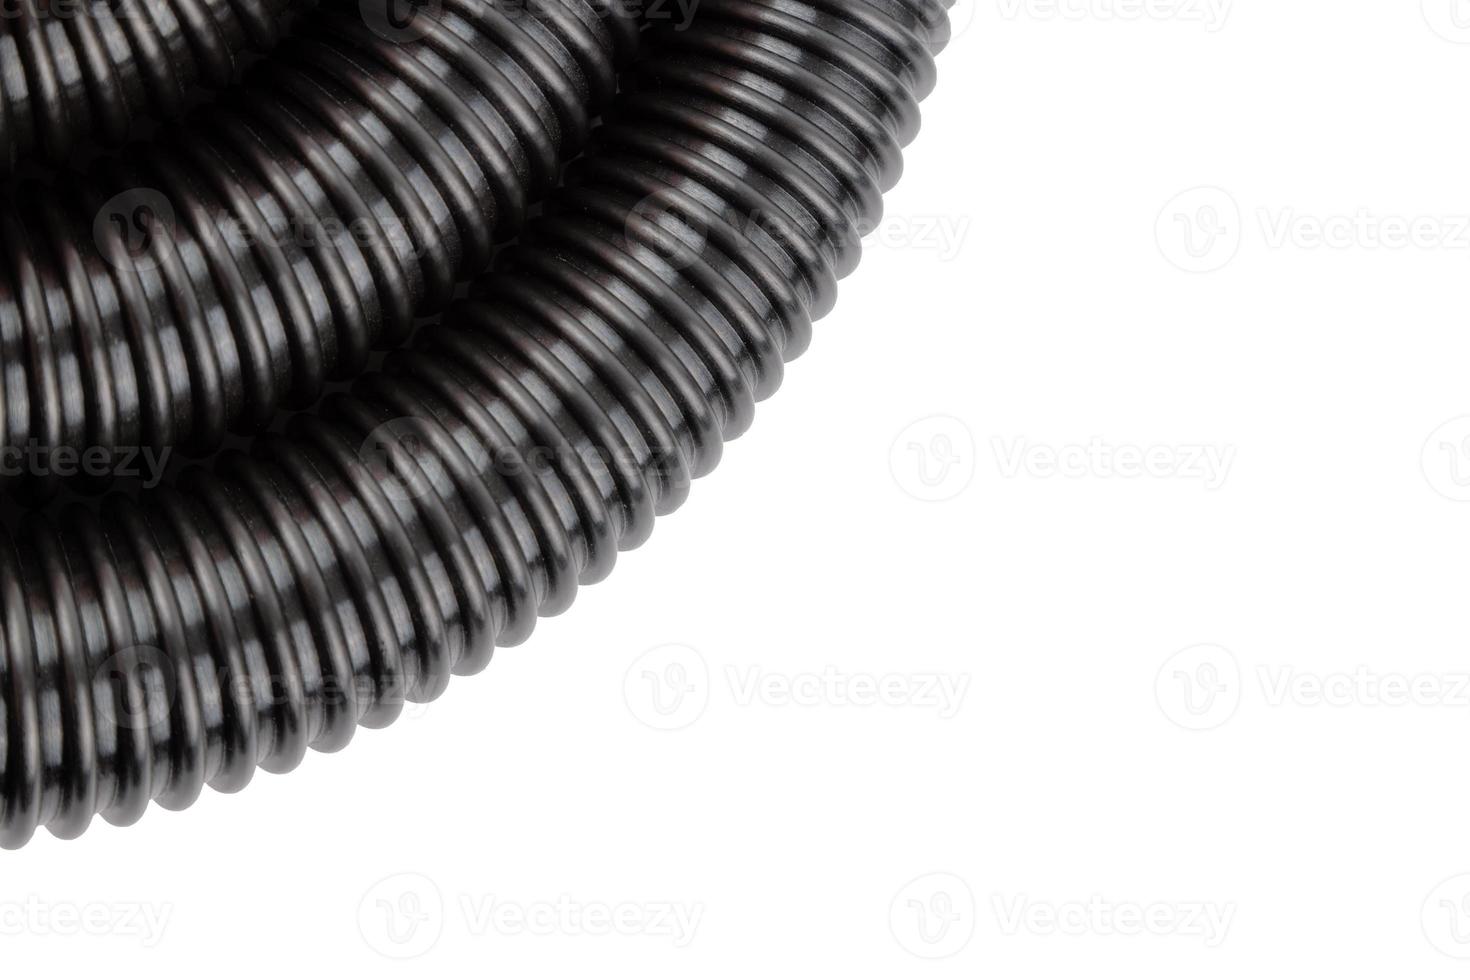 mangueira de aspirador de pó ondulado de plástico preto no fundo branco foto